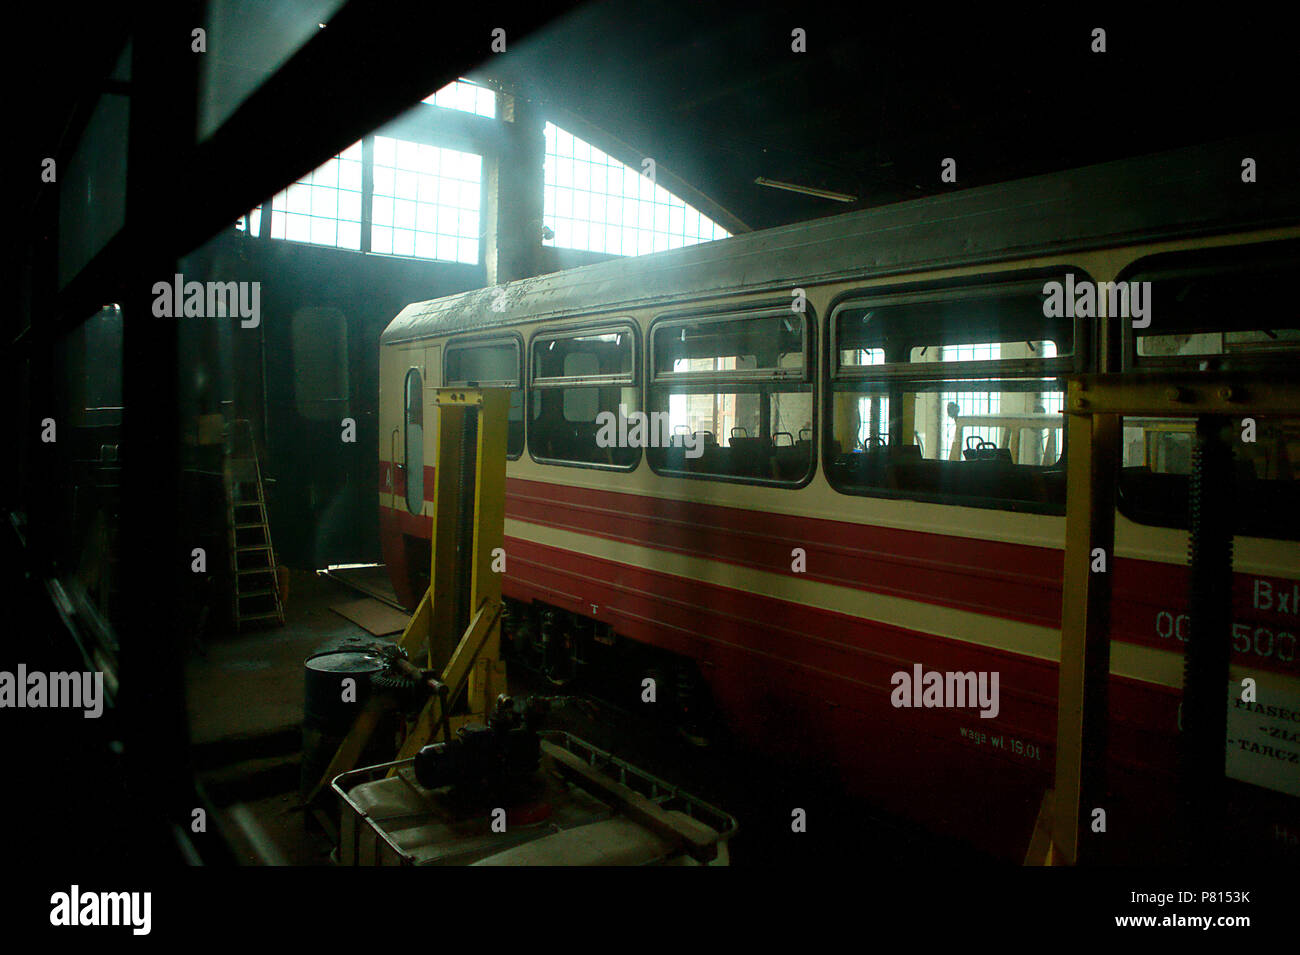 old train in dark workshop, backlight Stock Photo